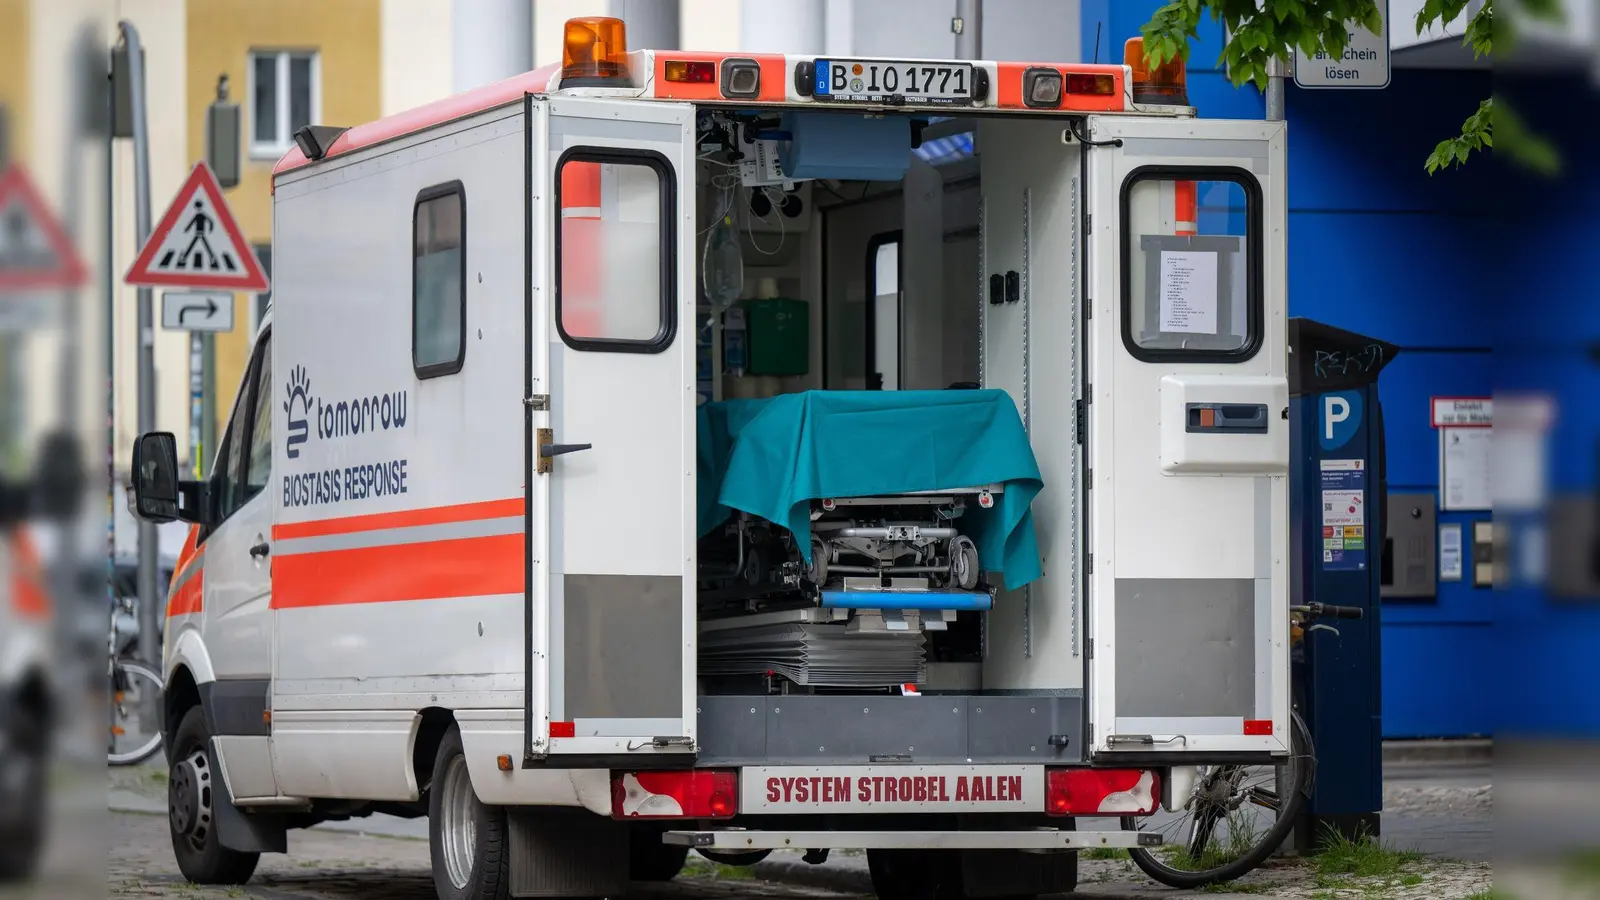 Mobile Kryokonservierung kann mit Hilfe von umgebauten Krankenwagen durchgeführt werden. (Foto: Monika Skolimowska/dpa)